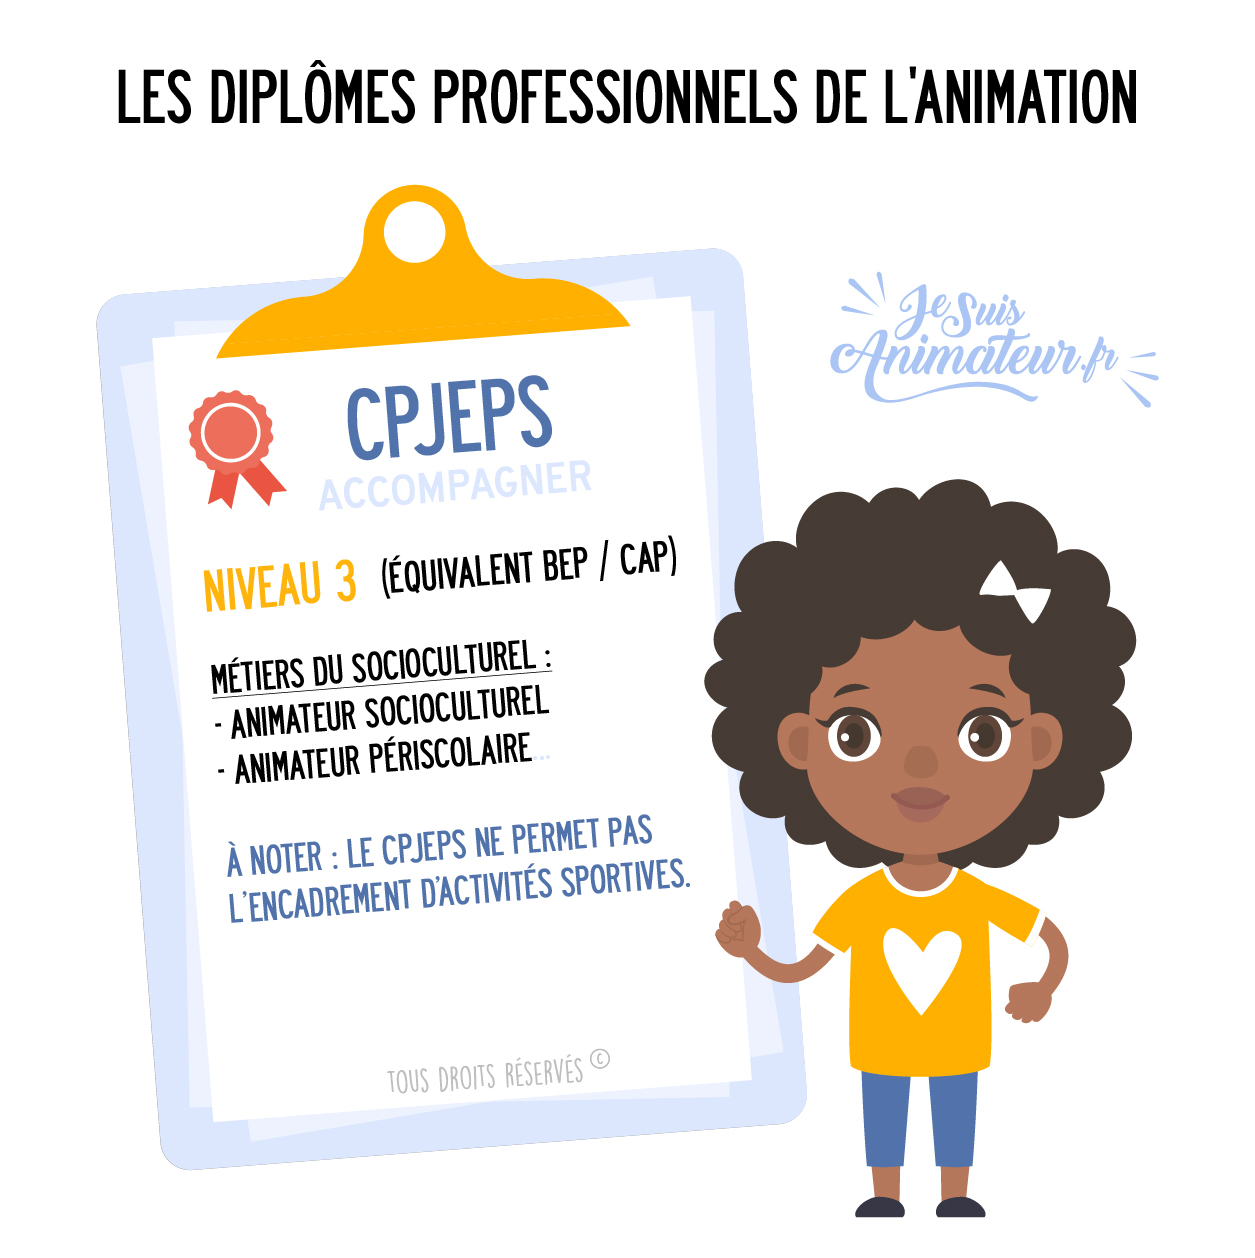 Formation professionnelle de l'animation : CPJEPS (Certificat Professionnel de la Jeunesse, de l'Éducation Populaire et du Sport)